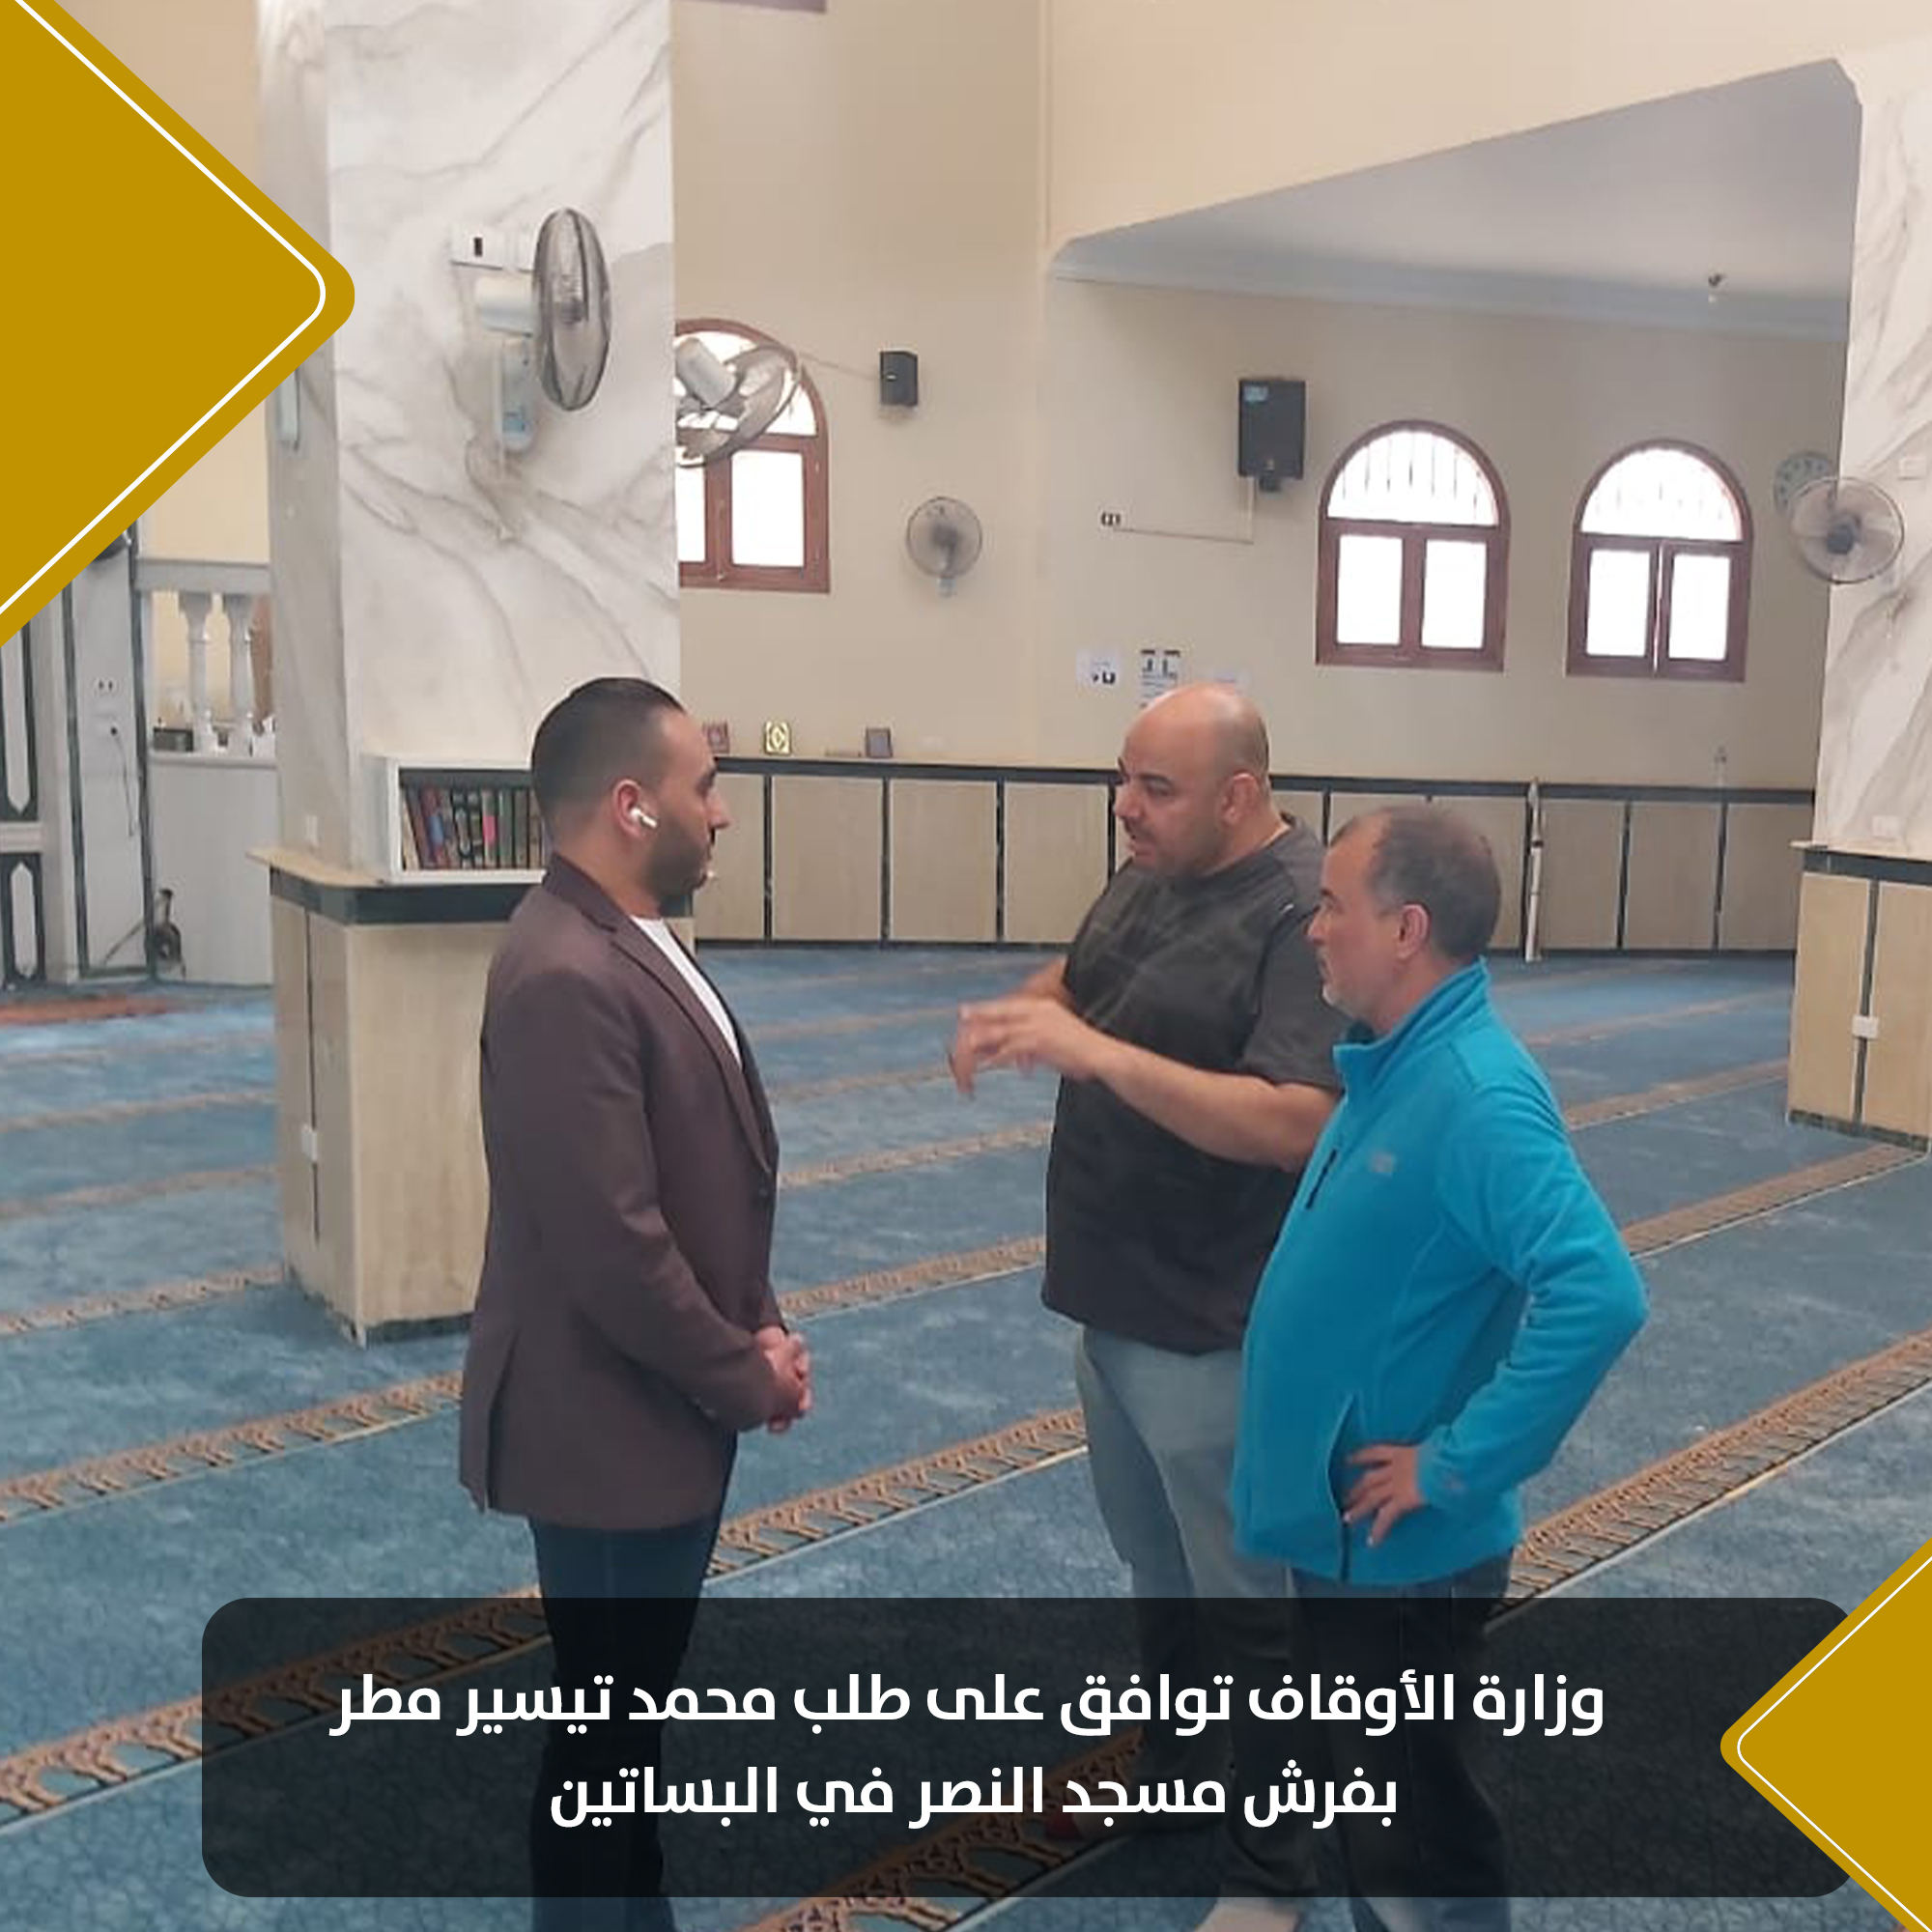 وزارة الأوقاف توافق على طلب النائب محمد تيسير مطر بفرش مسجد النصر بالبساتين (4)